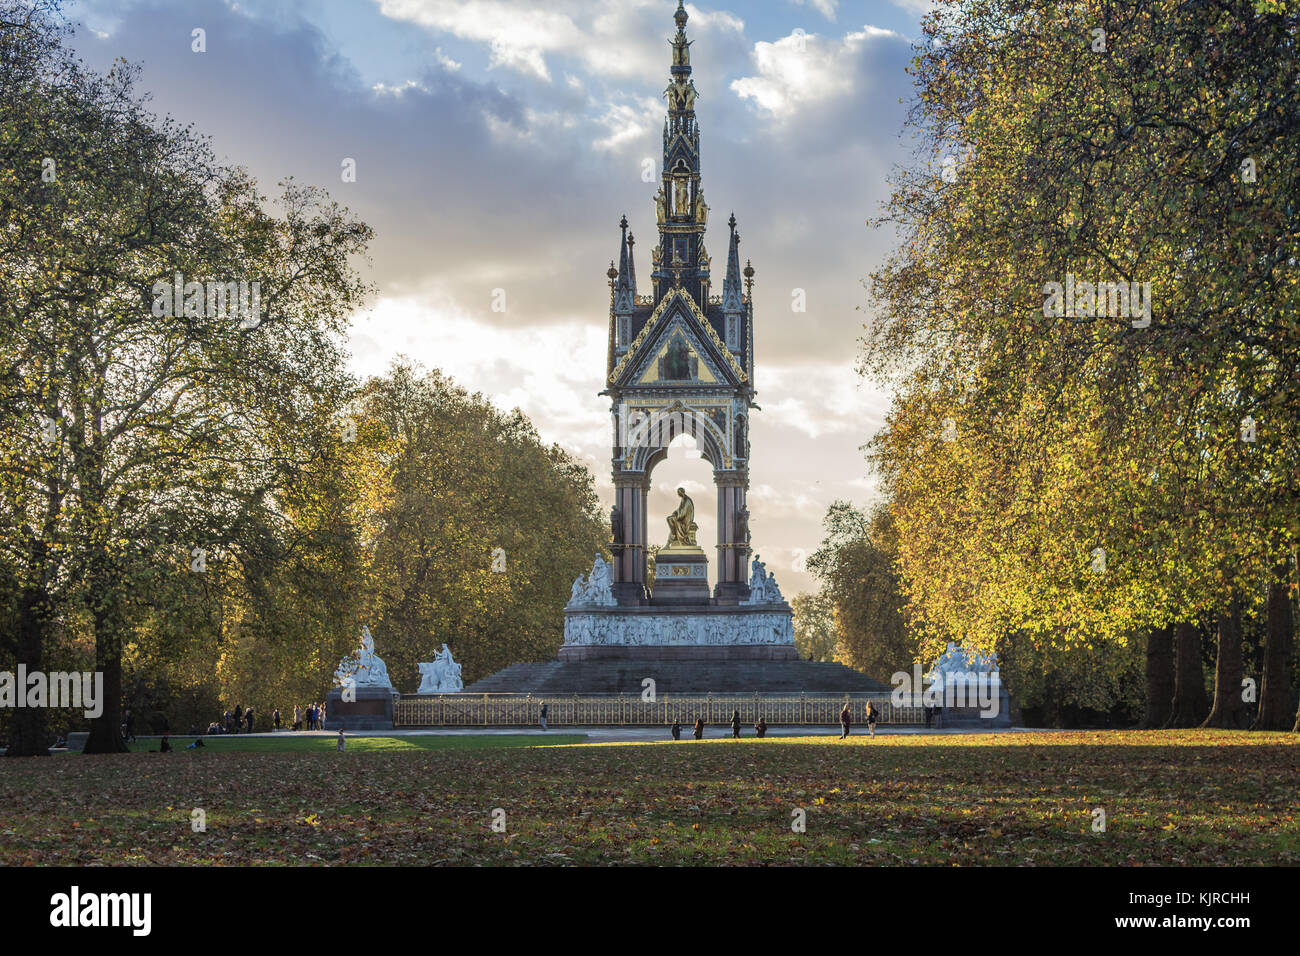 El Albert Memorial, un monumento dedicado al Príncipe Alberto de la Reina Victoria, situado en Londres. Foto de stock